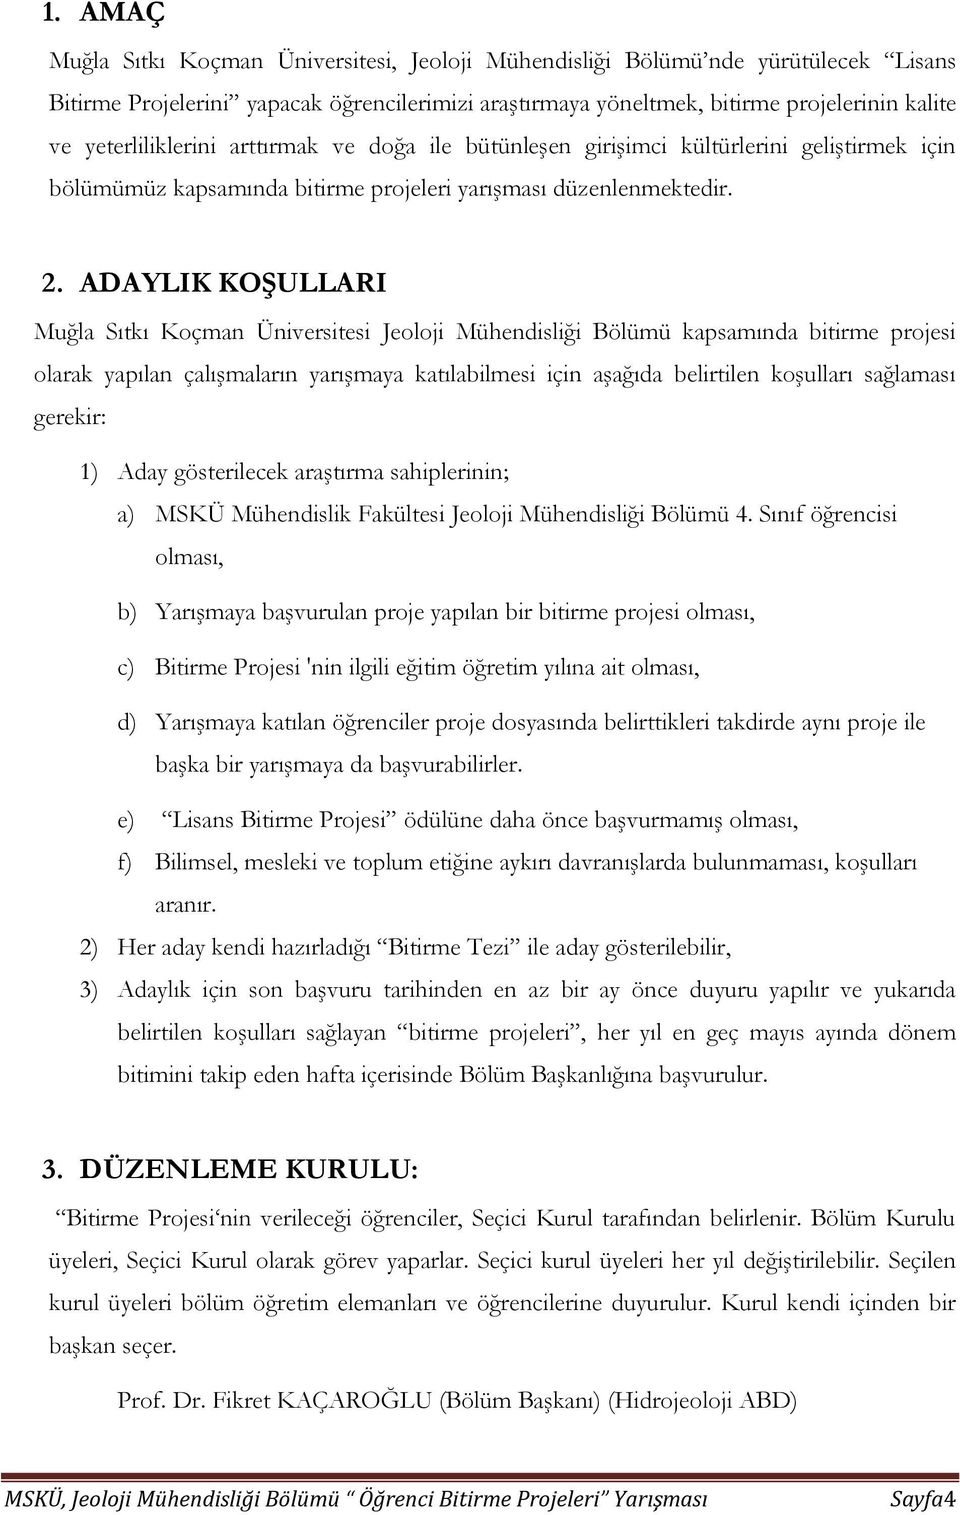 ADAYLIK KOŞULLARI Muğla Sıtkı Koçman Üniversitesi Jeoloji Mühendisliği Bölümü kapsamında bitirme projesi olarak yapılan çalışmaların yarışmaya katılabilmesi için aşağıda belirtilen koşulları